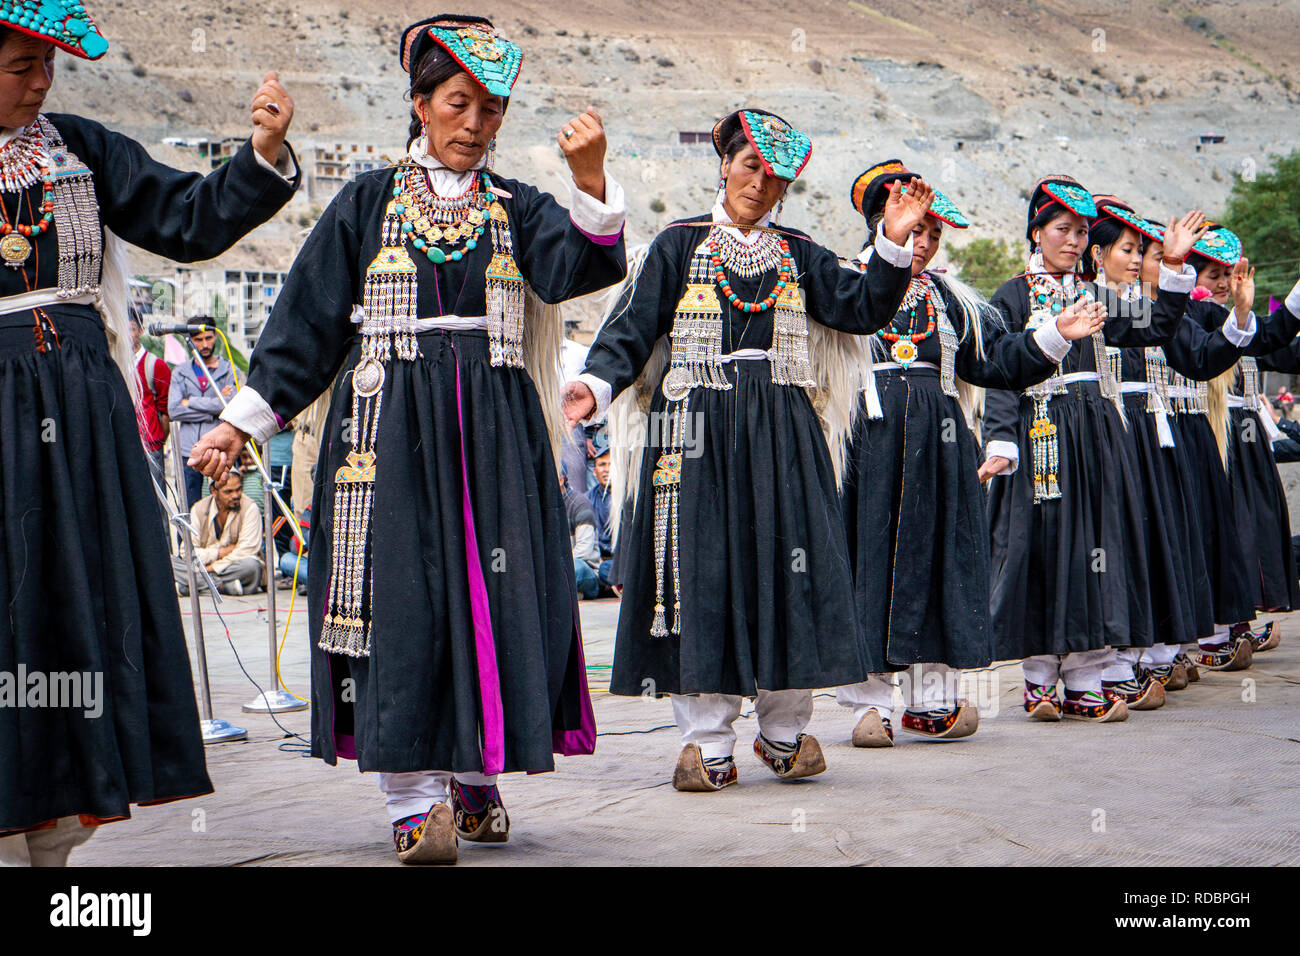 Ladakh, India - 4 de septiembre de 2018: grupo de bailarines con ropa tradicional de realizar el festival en Ladakh. Editorial ilustrativos. Foto de stock